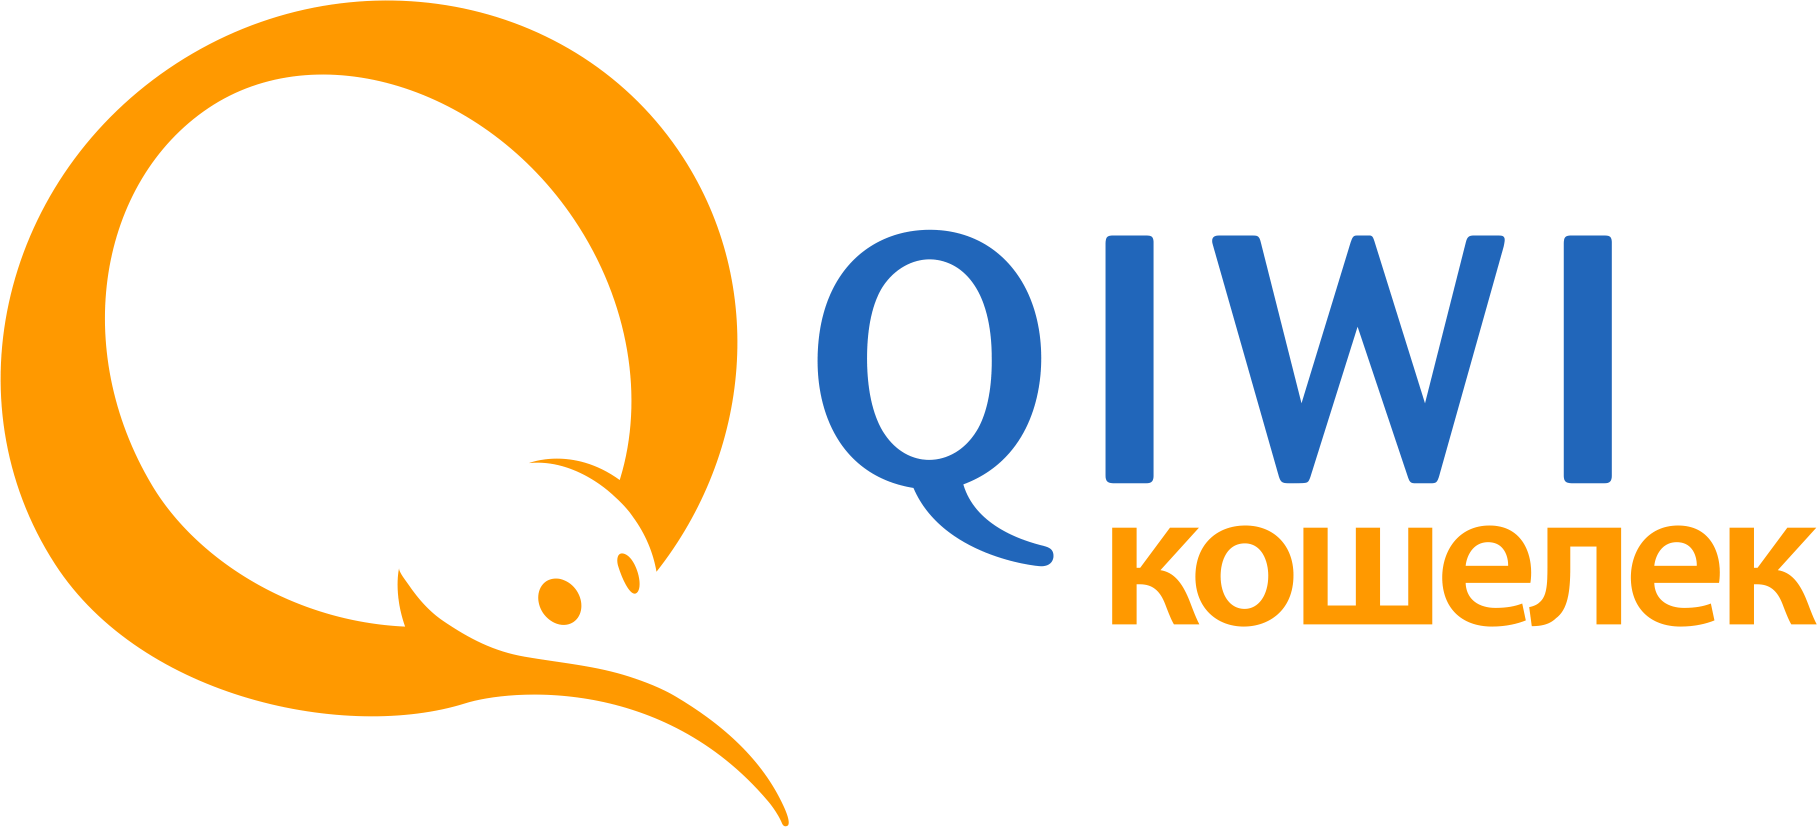 Киви кошелек. QIWI логотип. Картинки QIWI кошелек. Иконка киви кошелька.